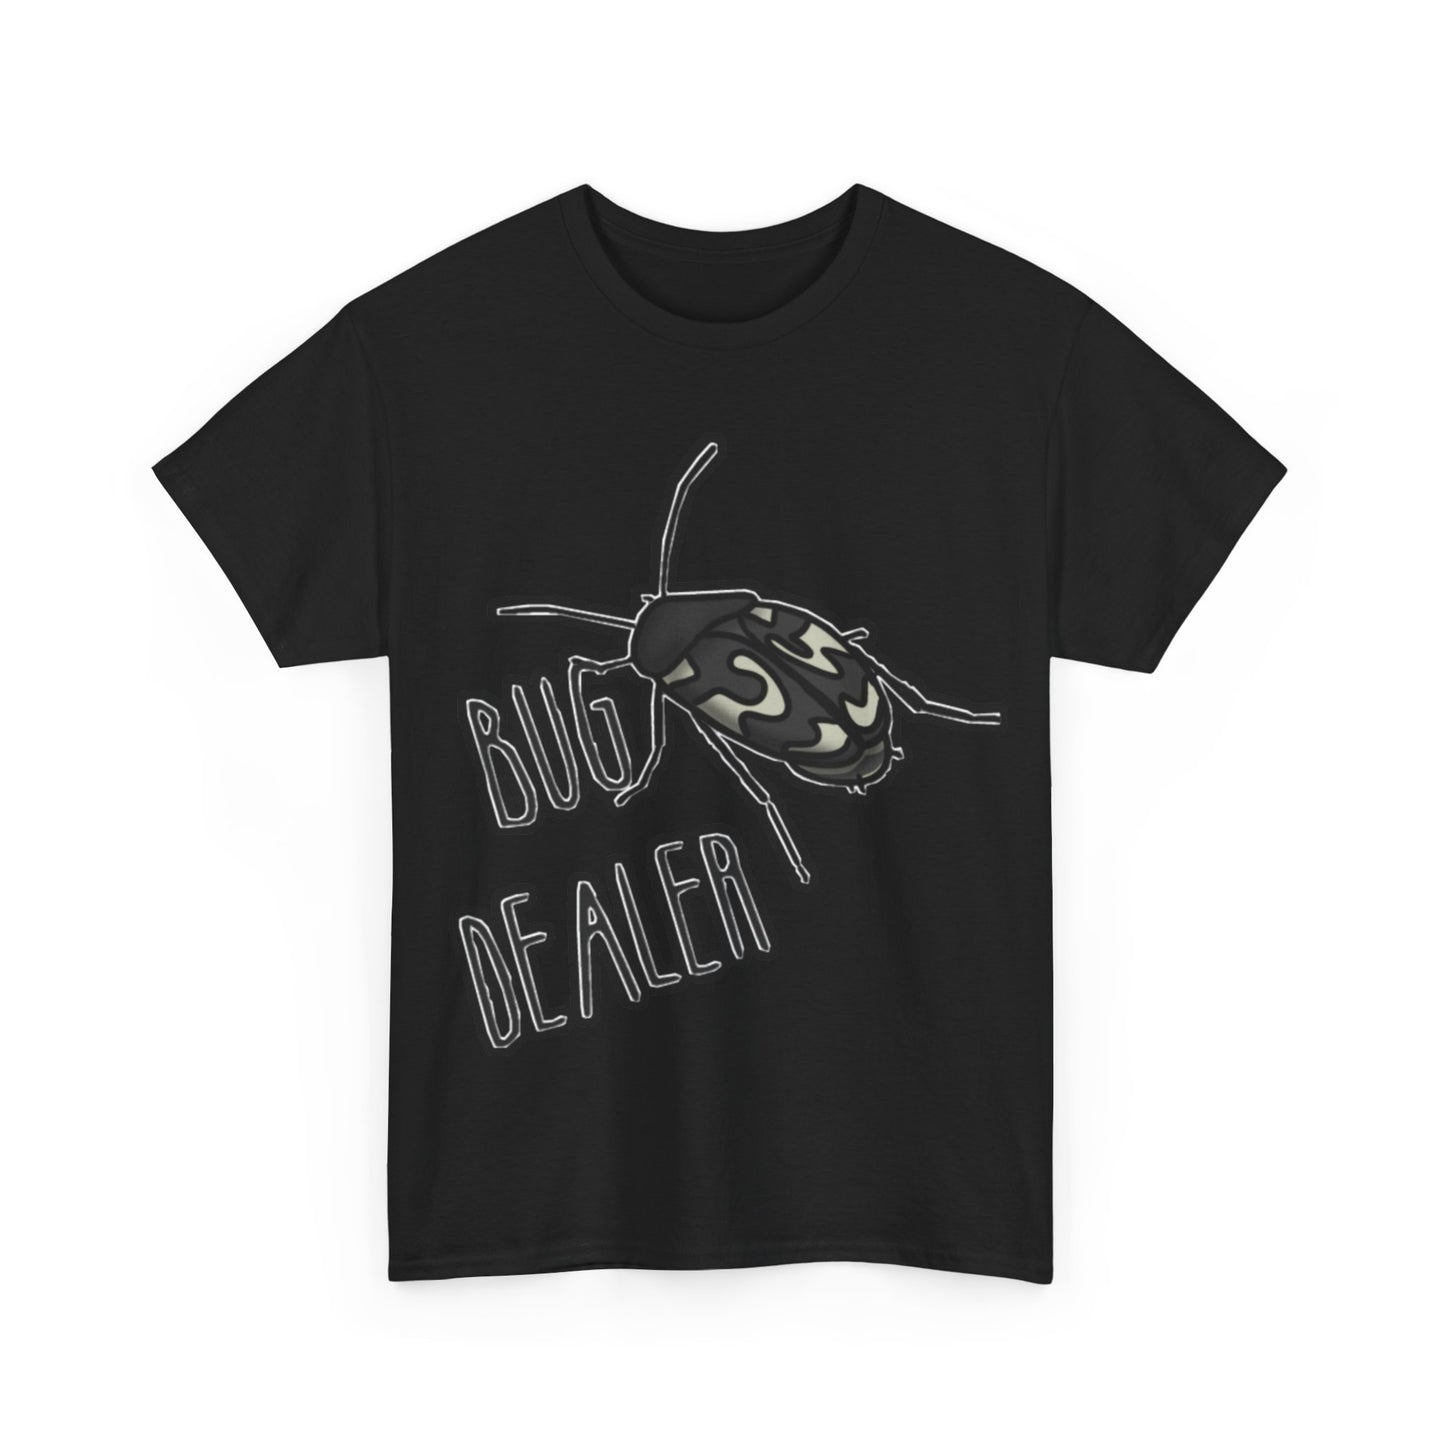 Bug Dealer